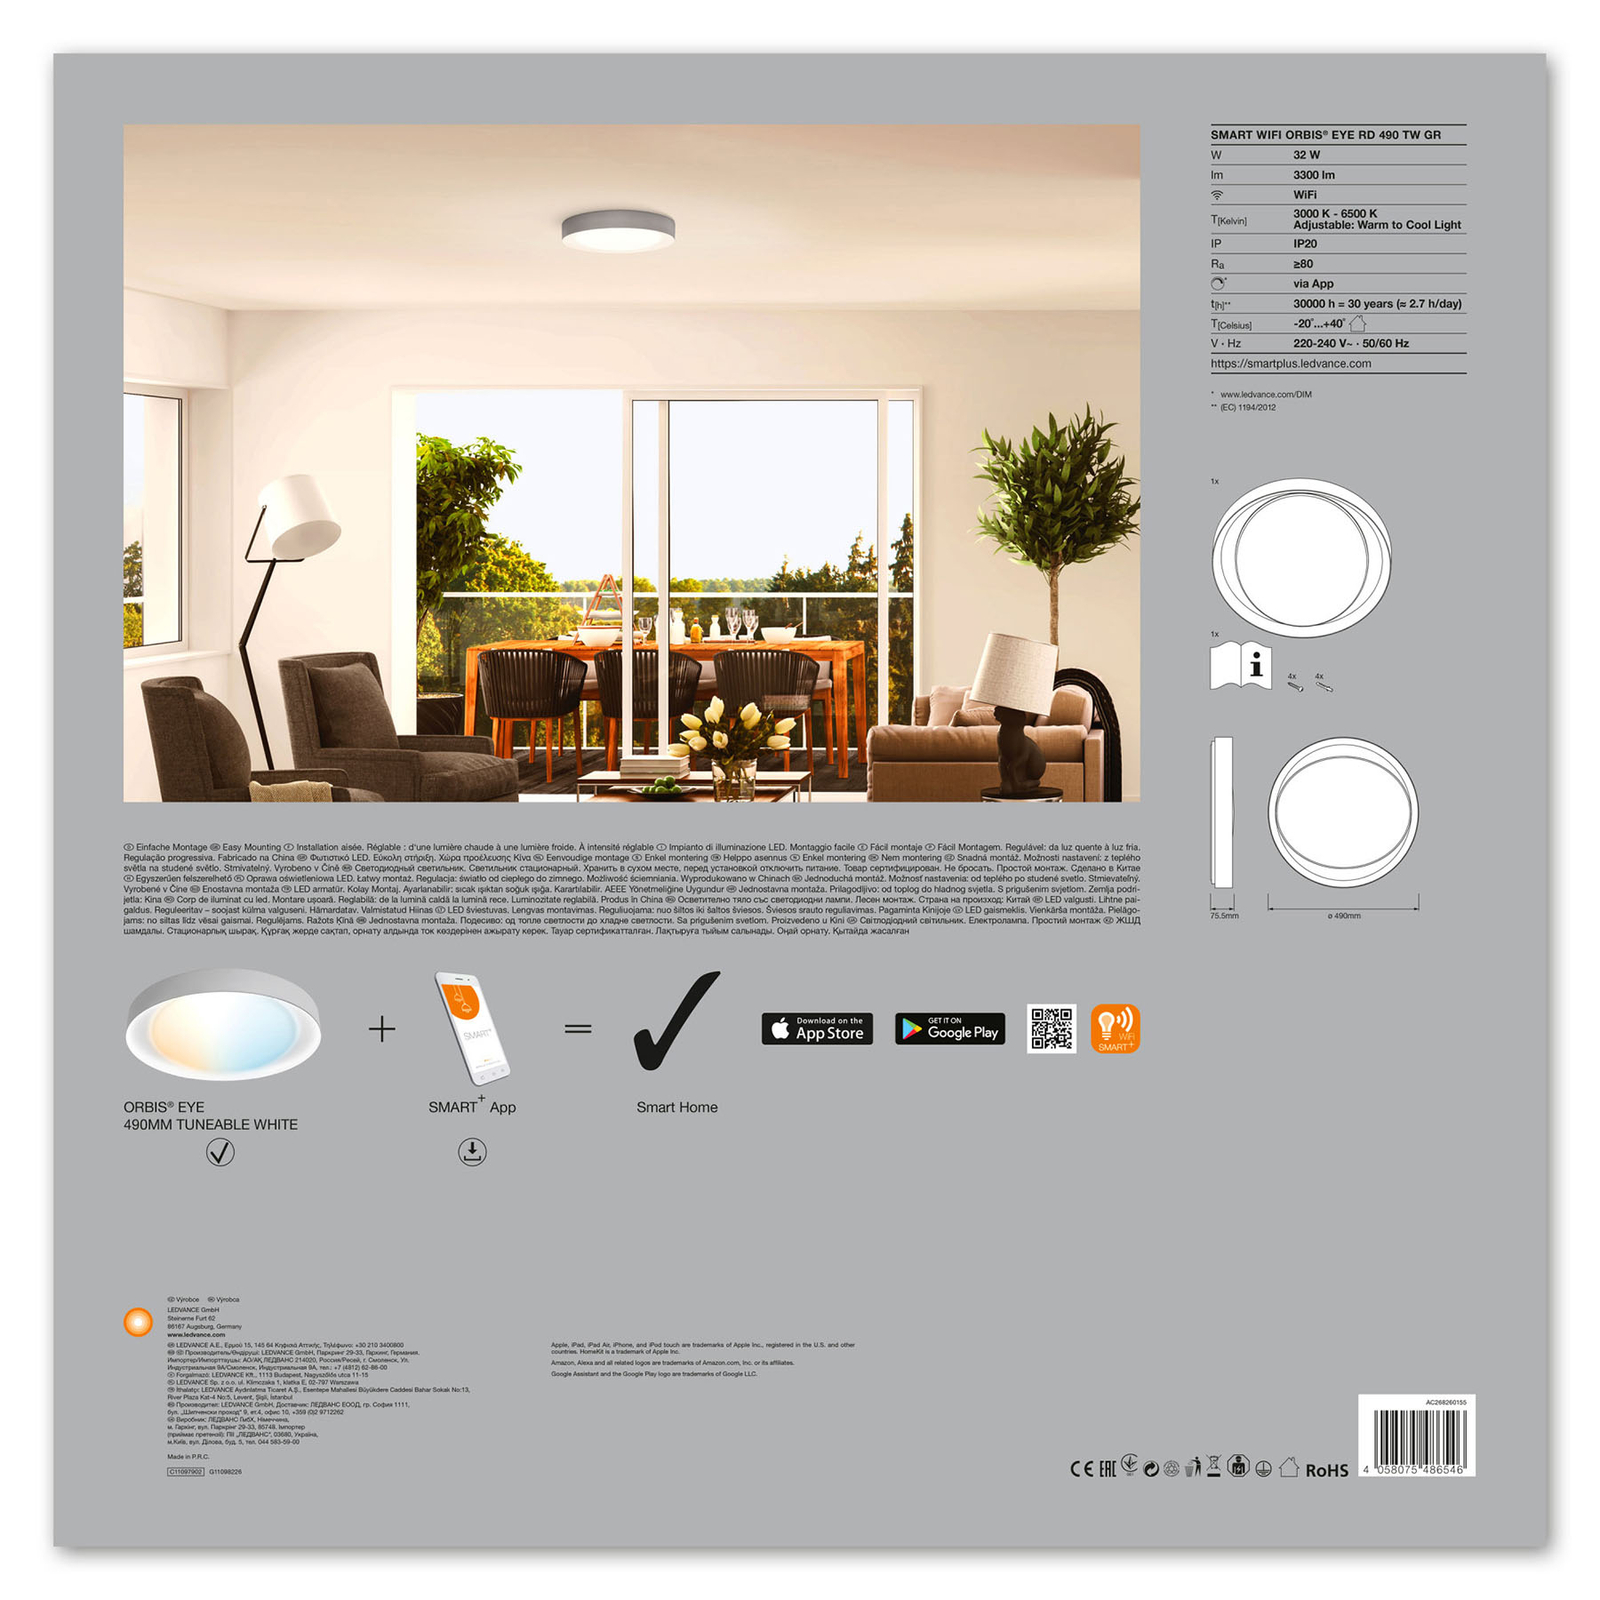 LEDVANCE SMART+ WiFi Orbis Eye CCT 49cm grau